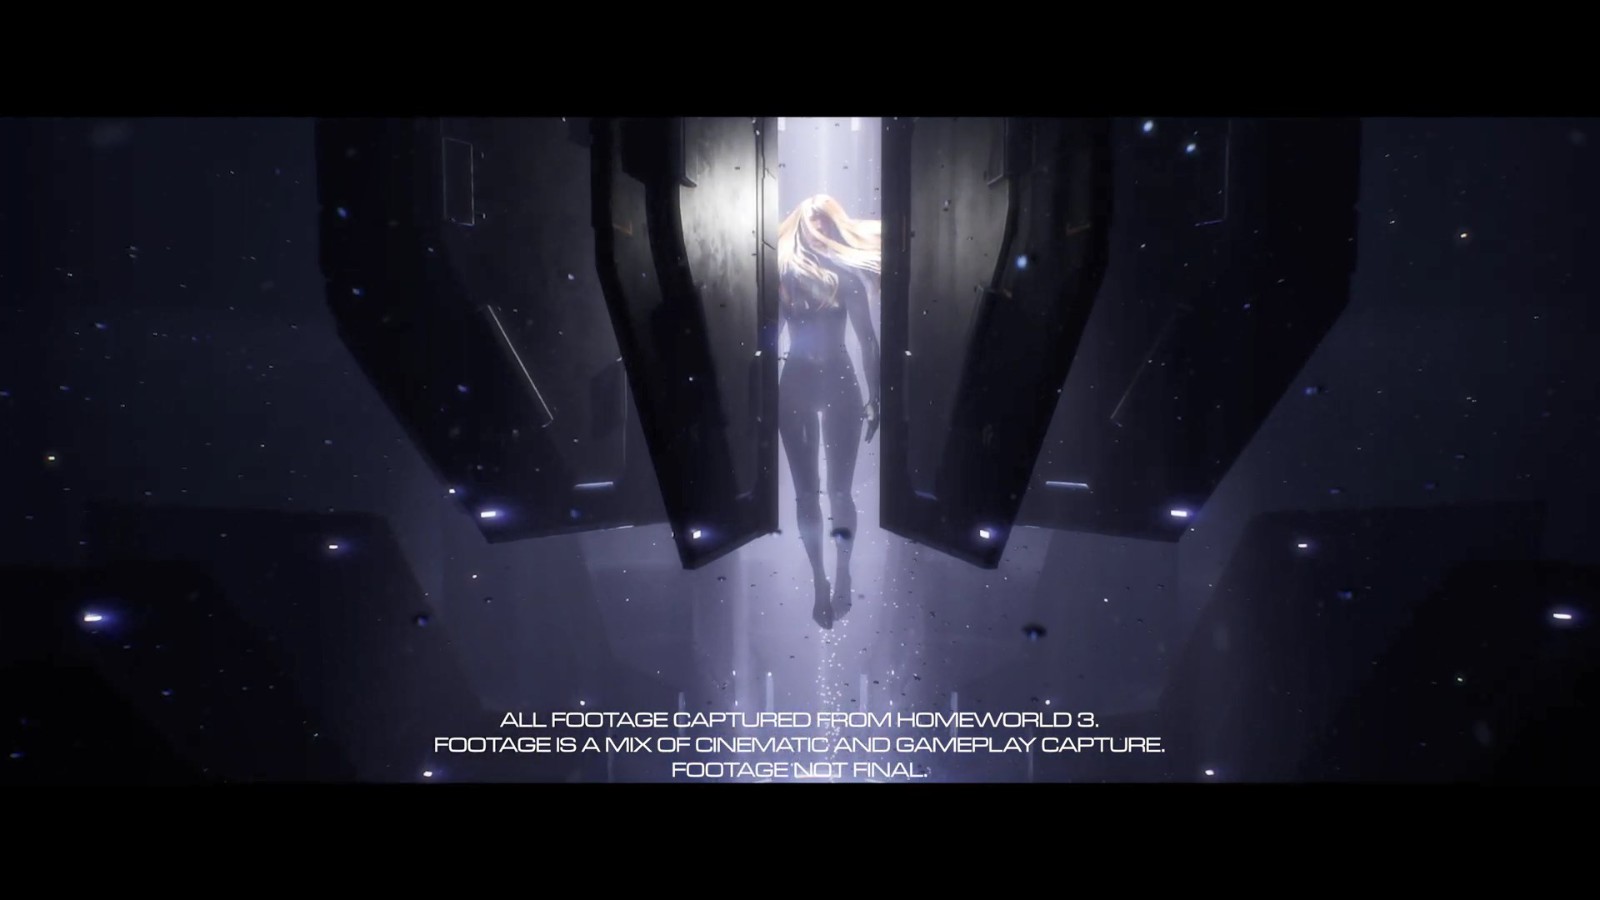 《家园3》发布故事预告片 星系深陷炼狱